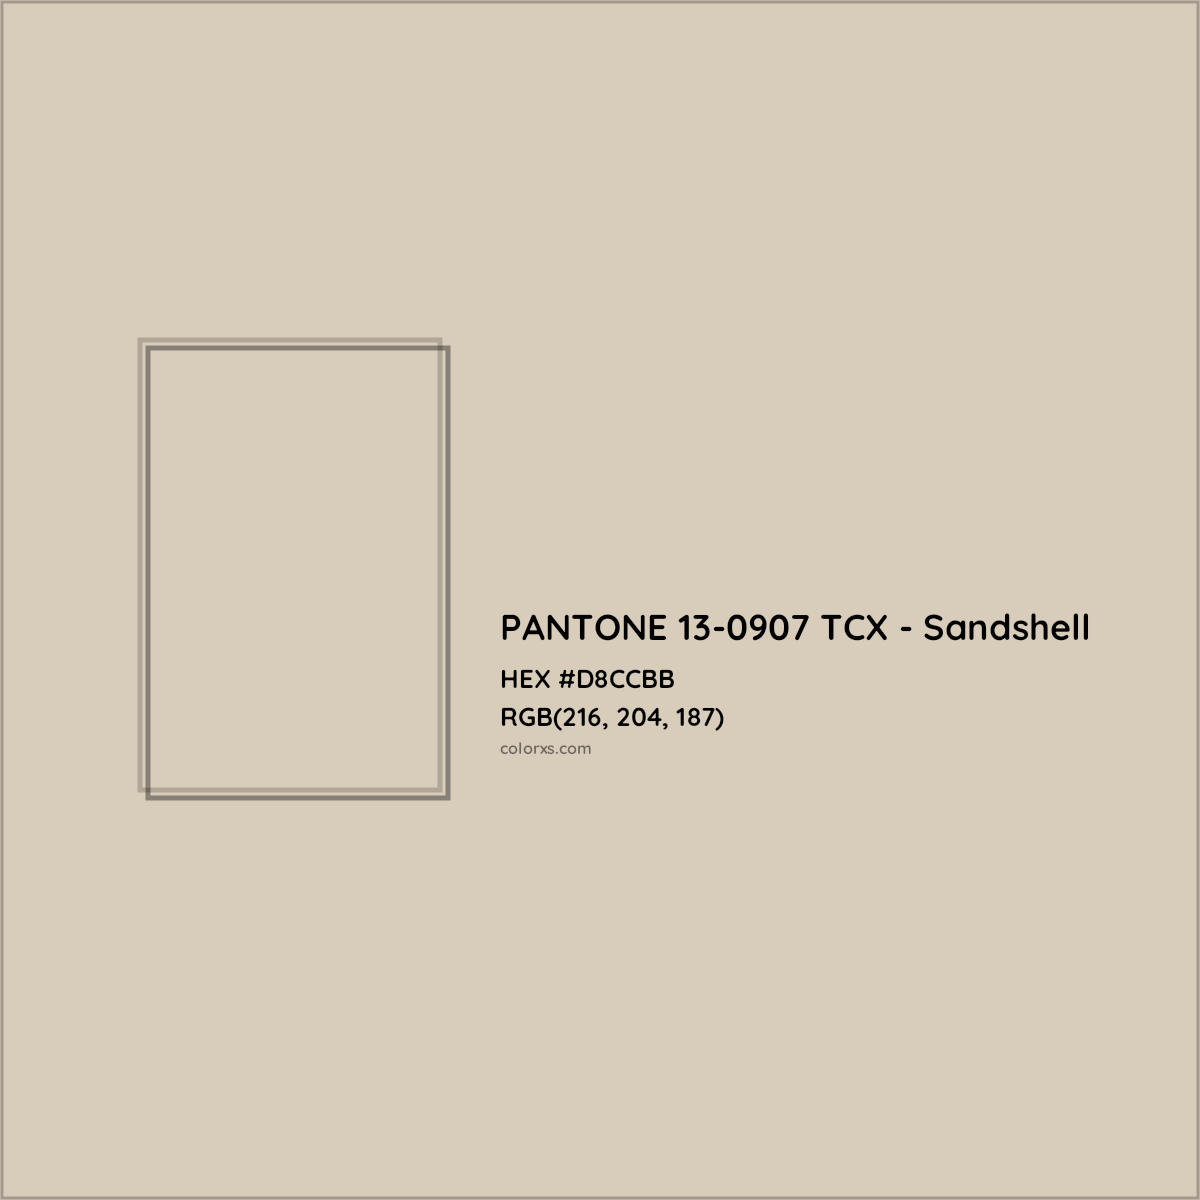 HEX #D8CCBB PANTONE 13-0907 TCX - Sandshell CMS Pantone TCX - Color Code